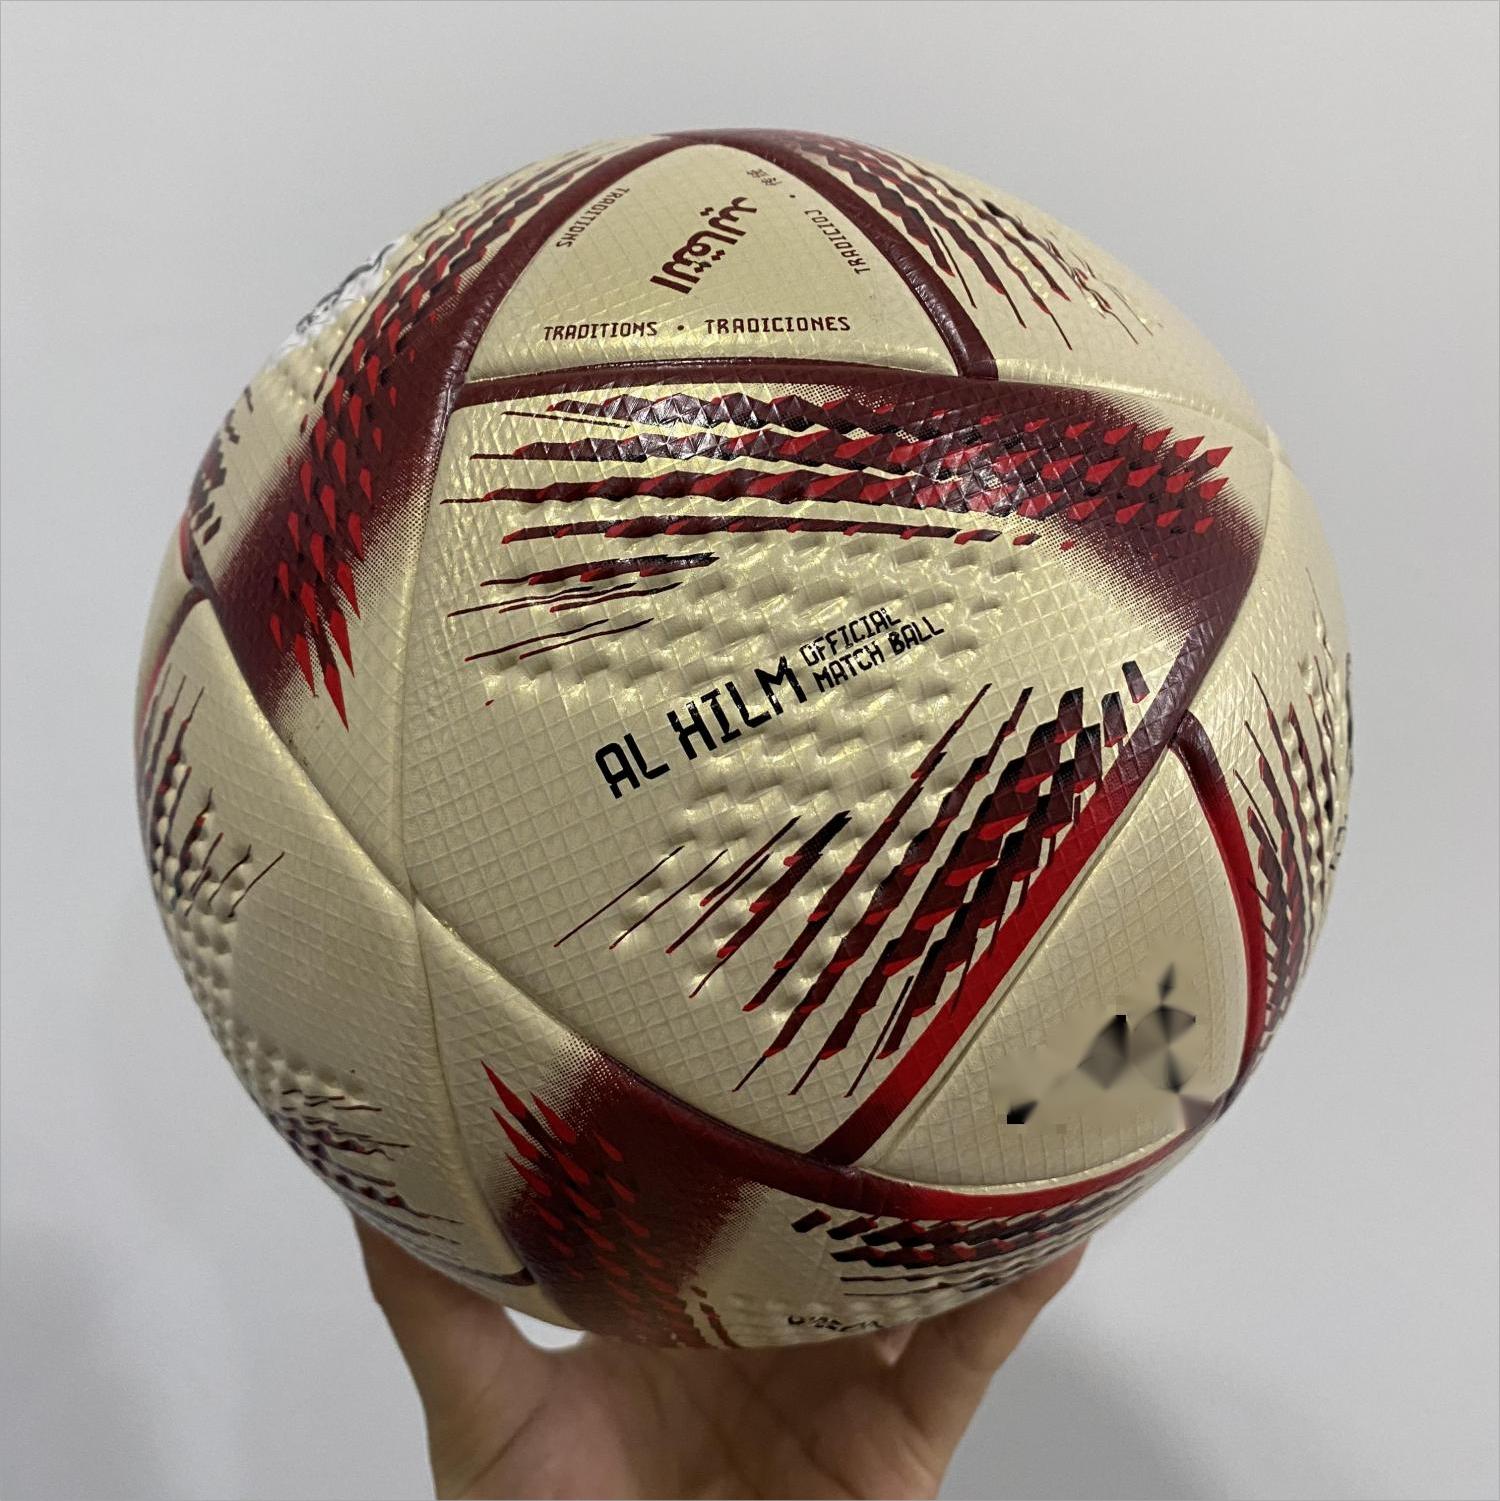 Palloni da calcio Finali della Coppa del mondo dedicato al calcio in PU di alta qualità artigianato squisita collezione di allenamento replica AL HILM e AL RIHLA